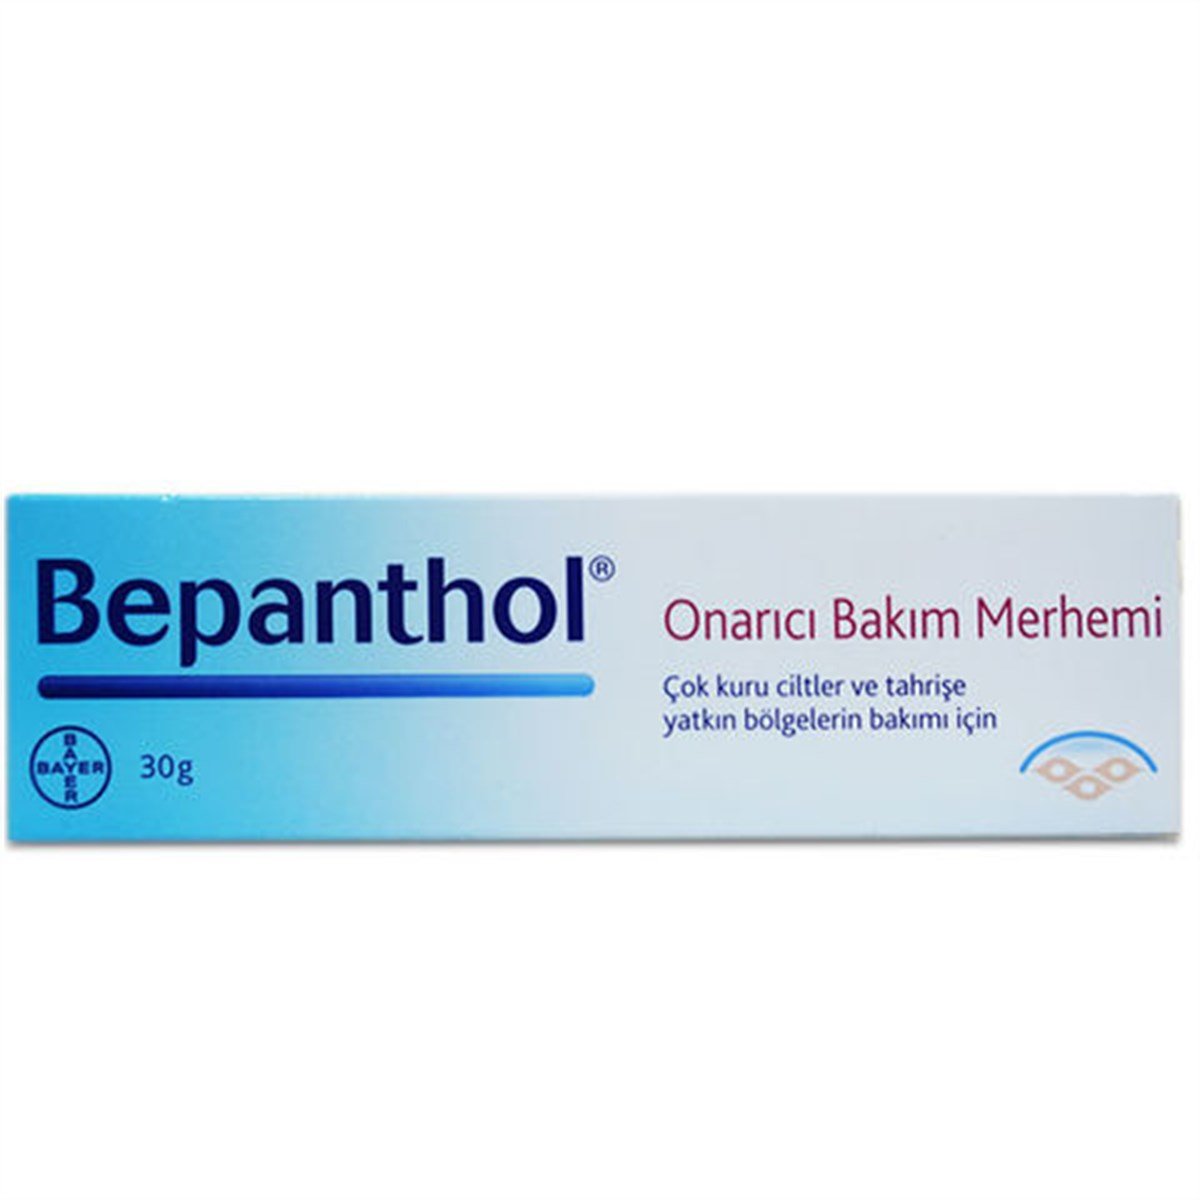 Bepanthol Onarıcı Bakım Merhemi 30 gr farmavitamin.com